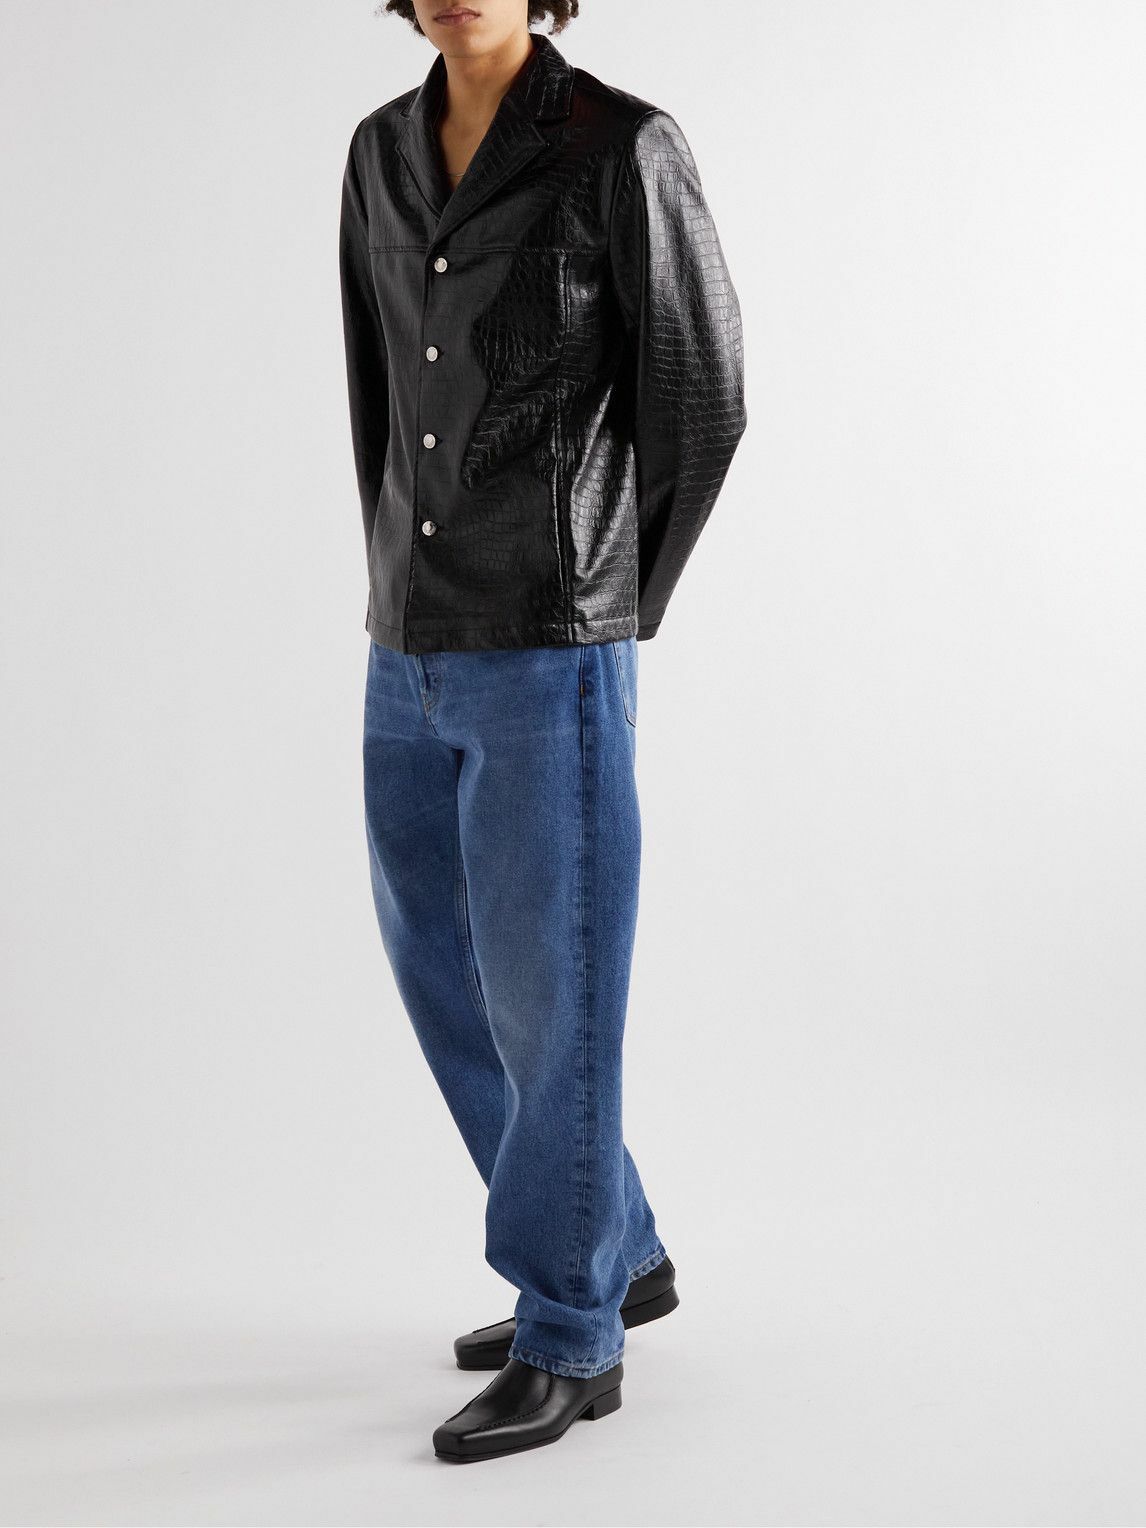 Séfr - Francis Croc-Effect Faux Leather Jacket - Black Séfr